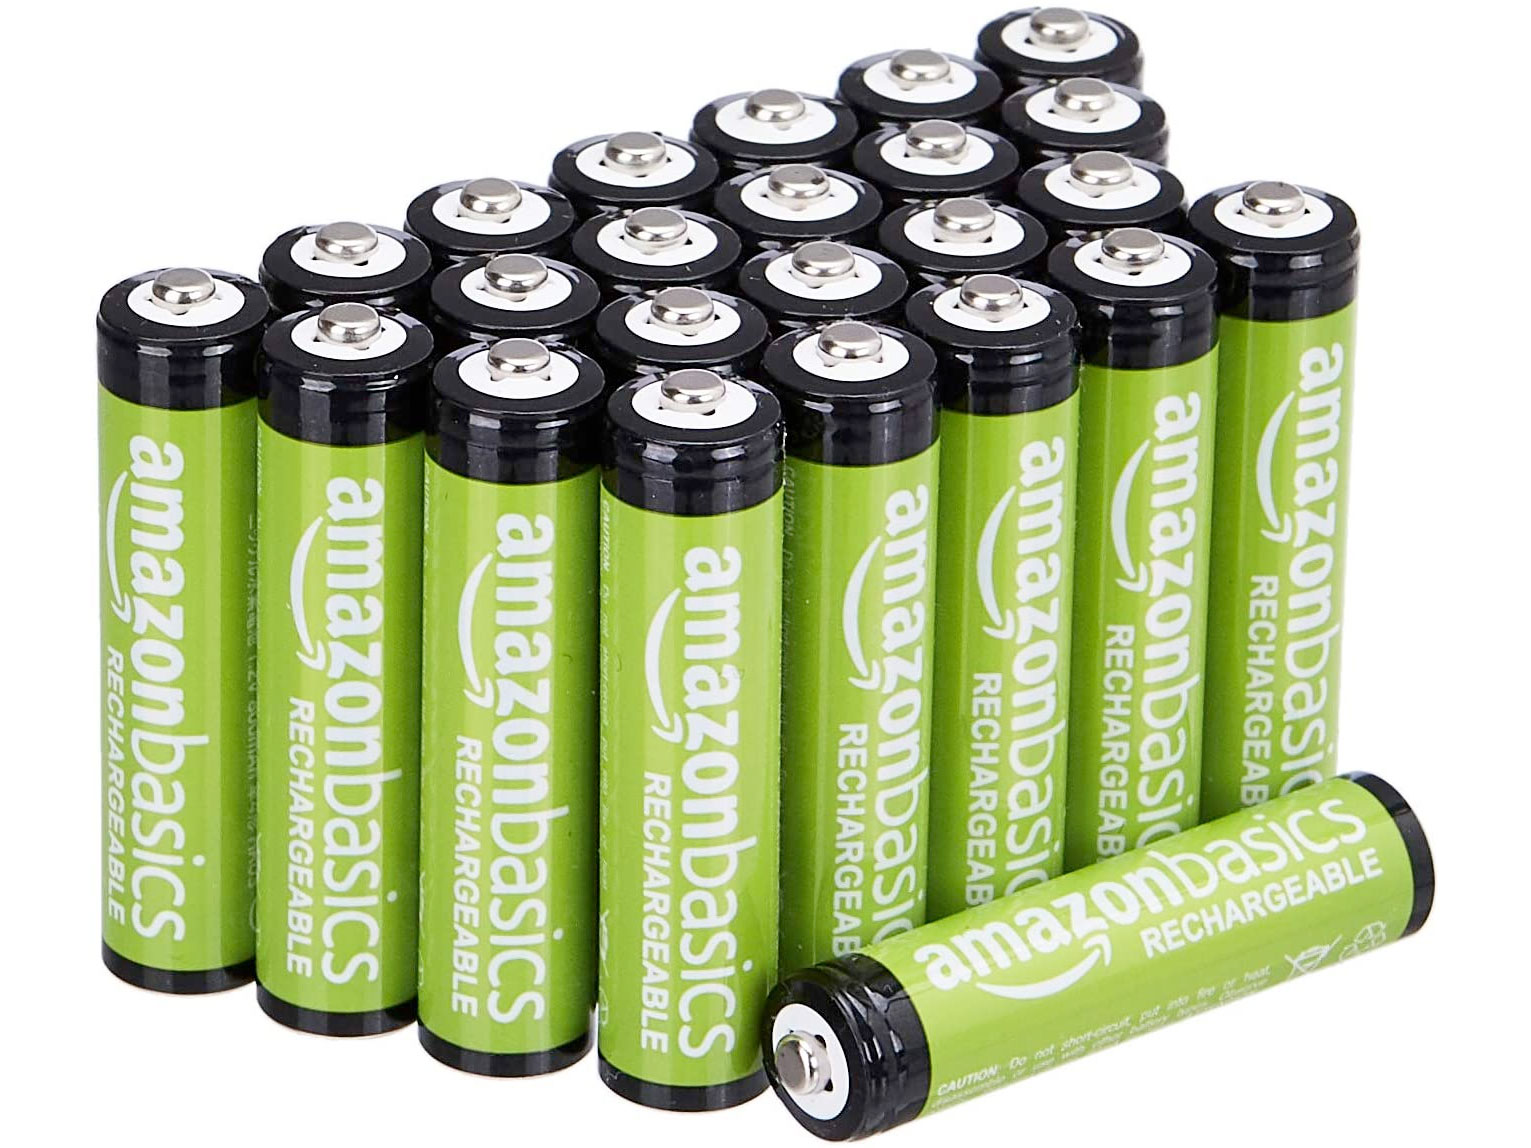 Amazon Basics AAA Rechargeable Batteries (24 Pack)只賣$19.51